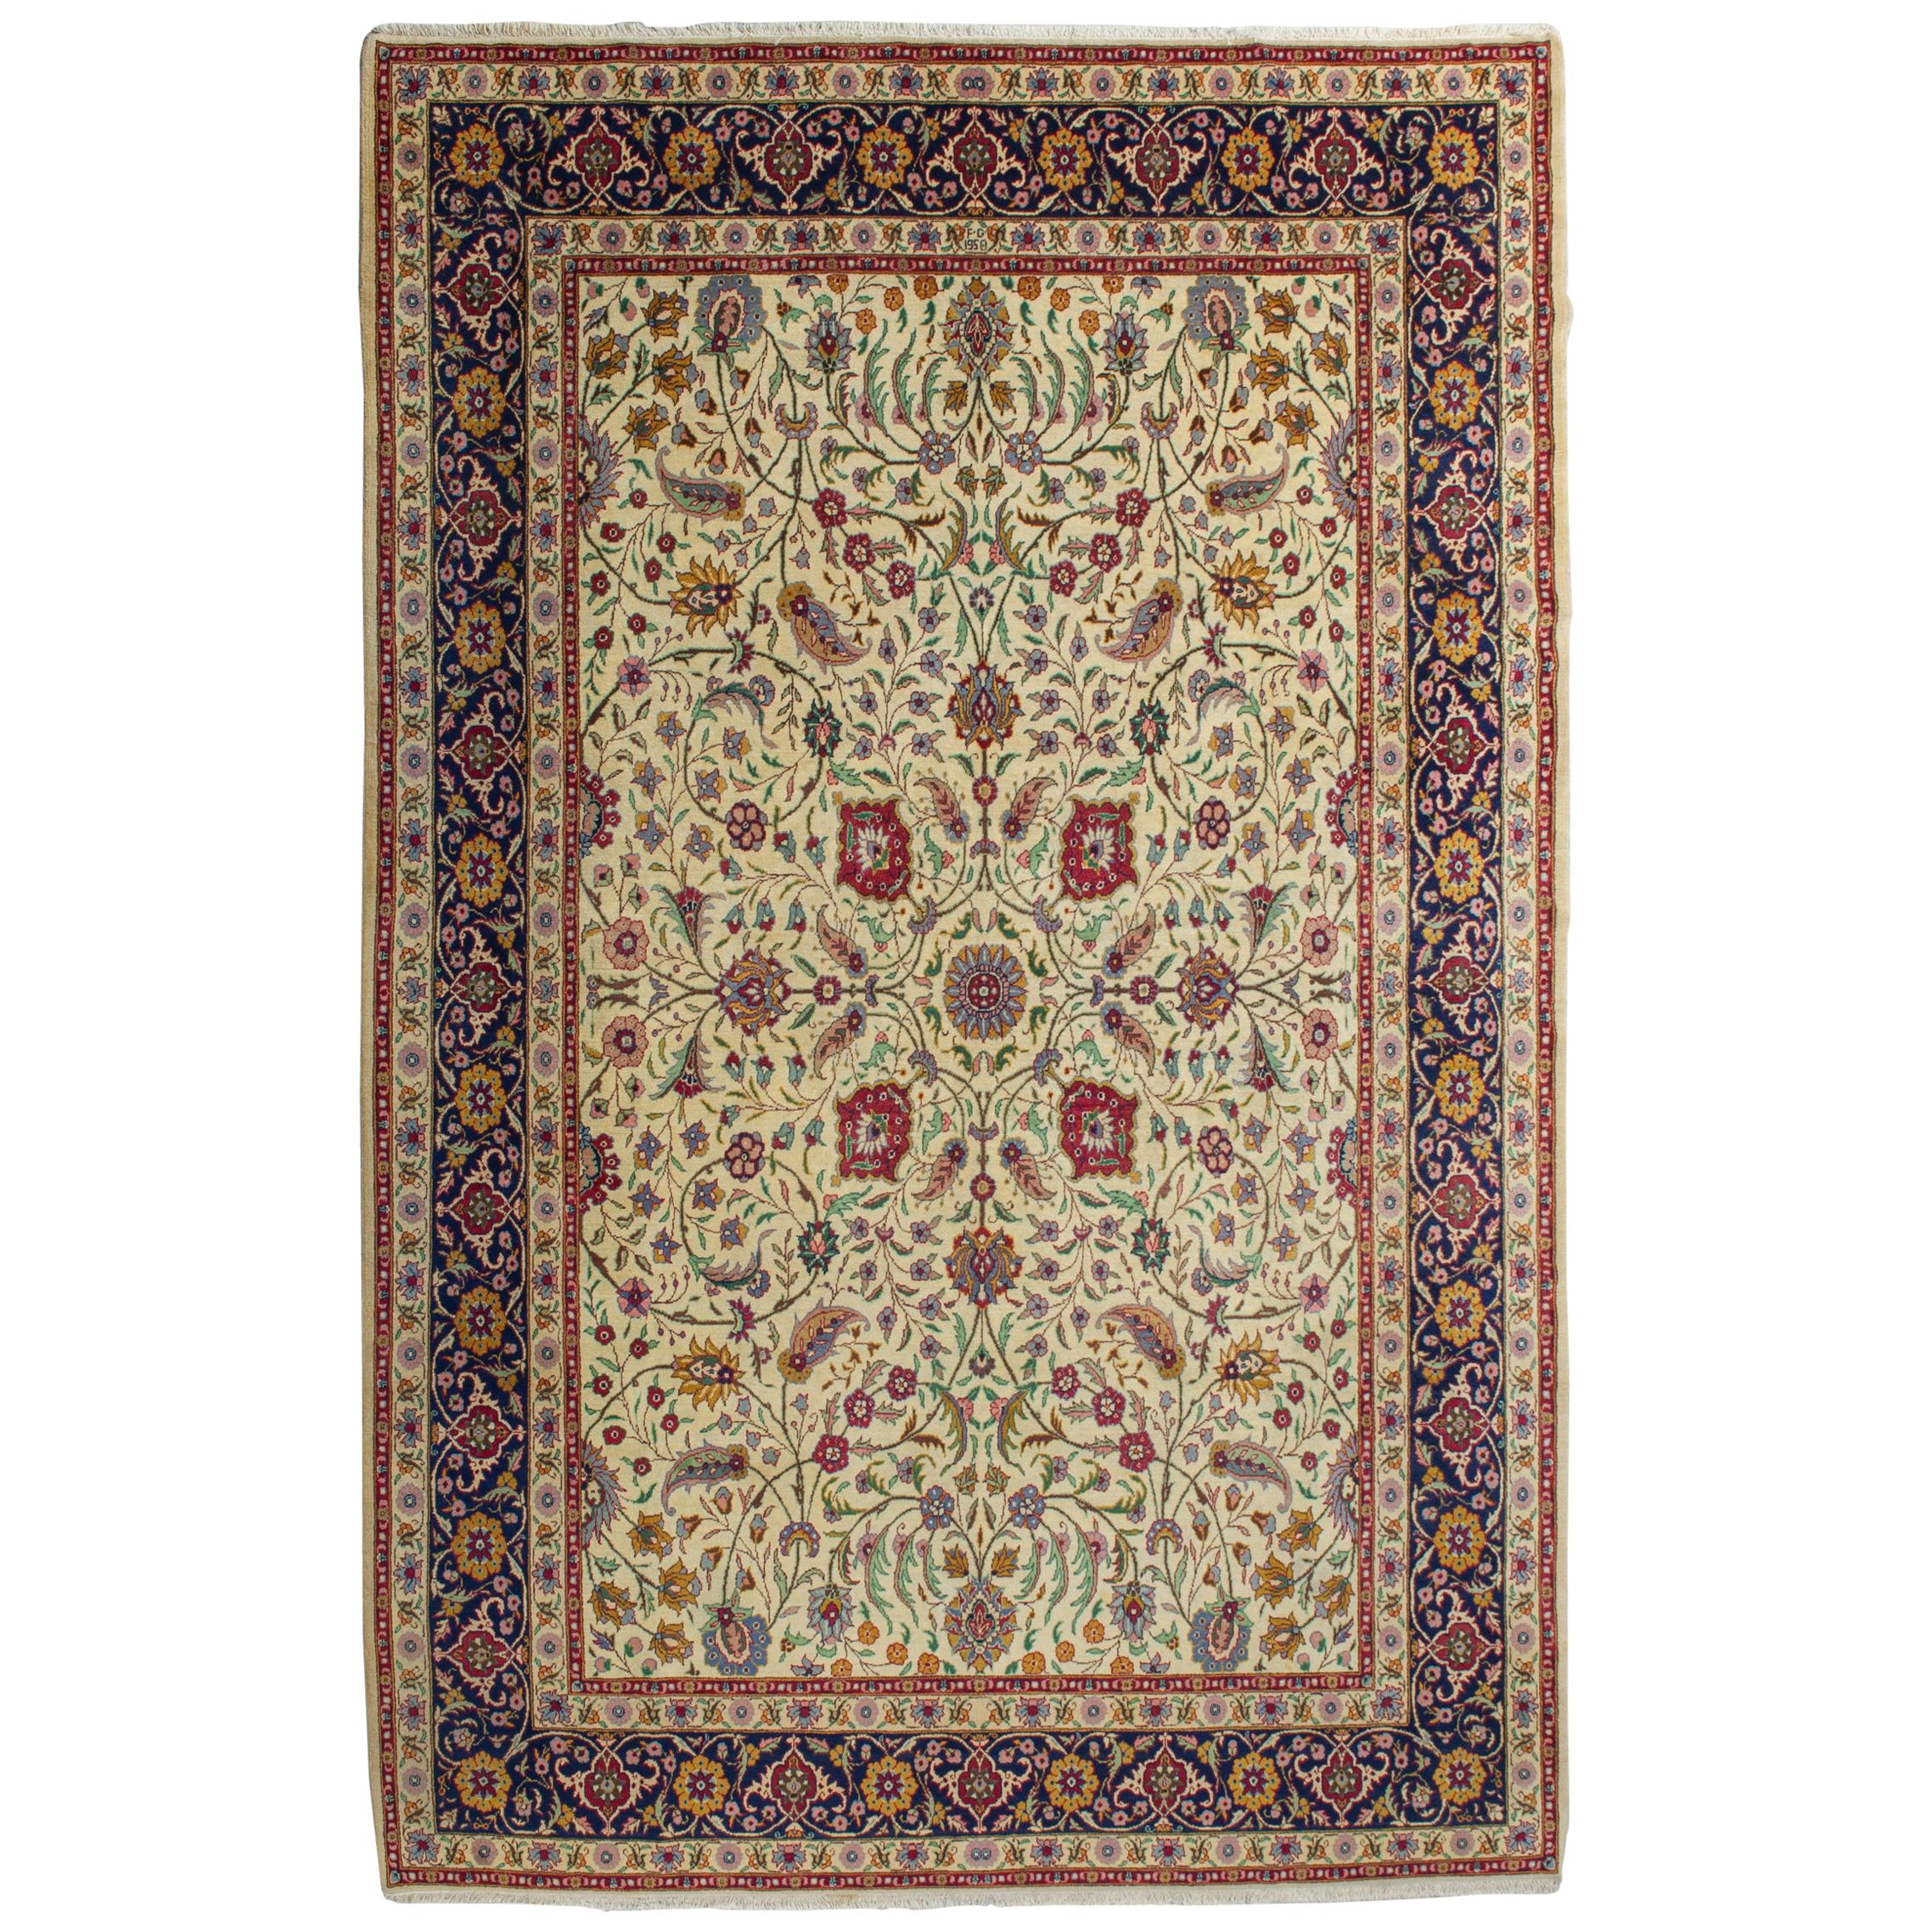 Turkish KEMALIYEH Dated Carpet